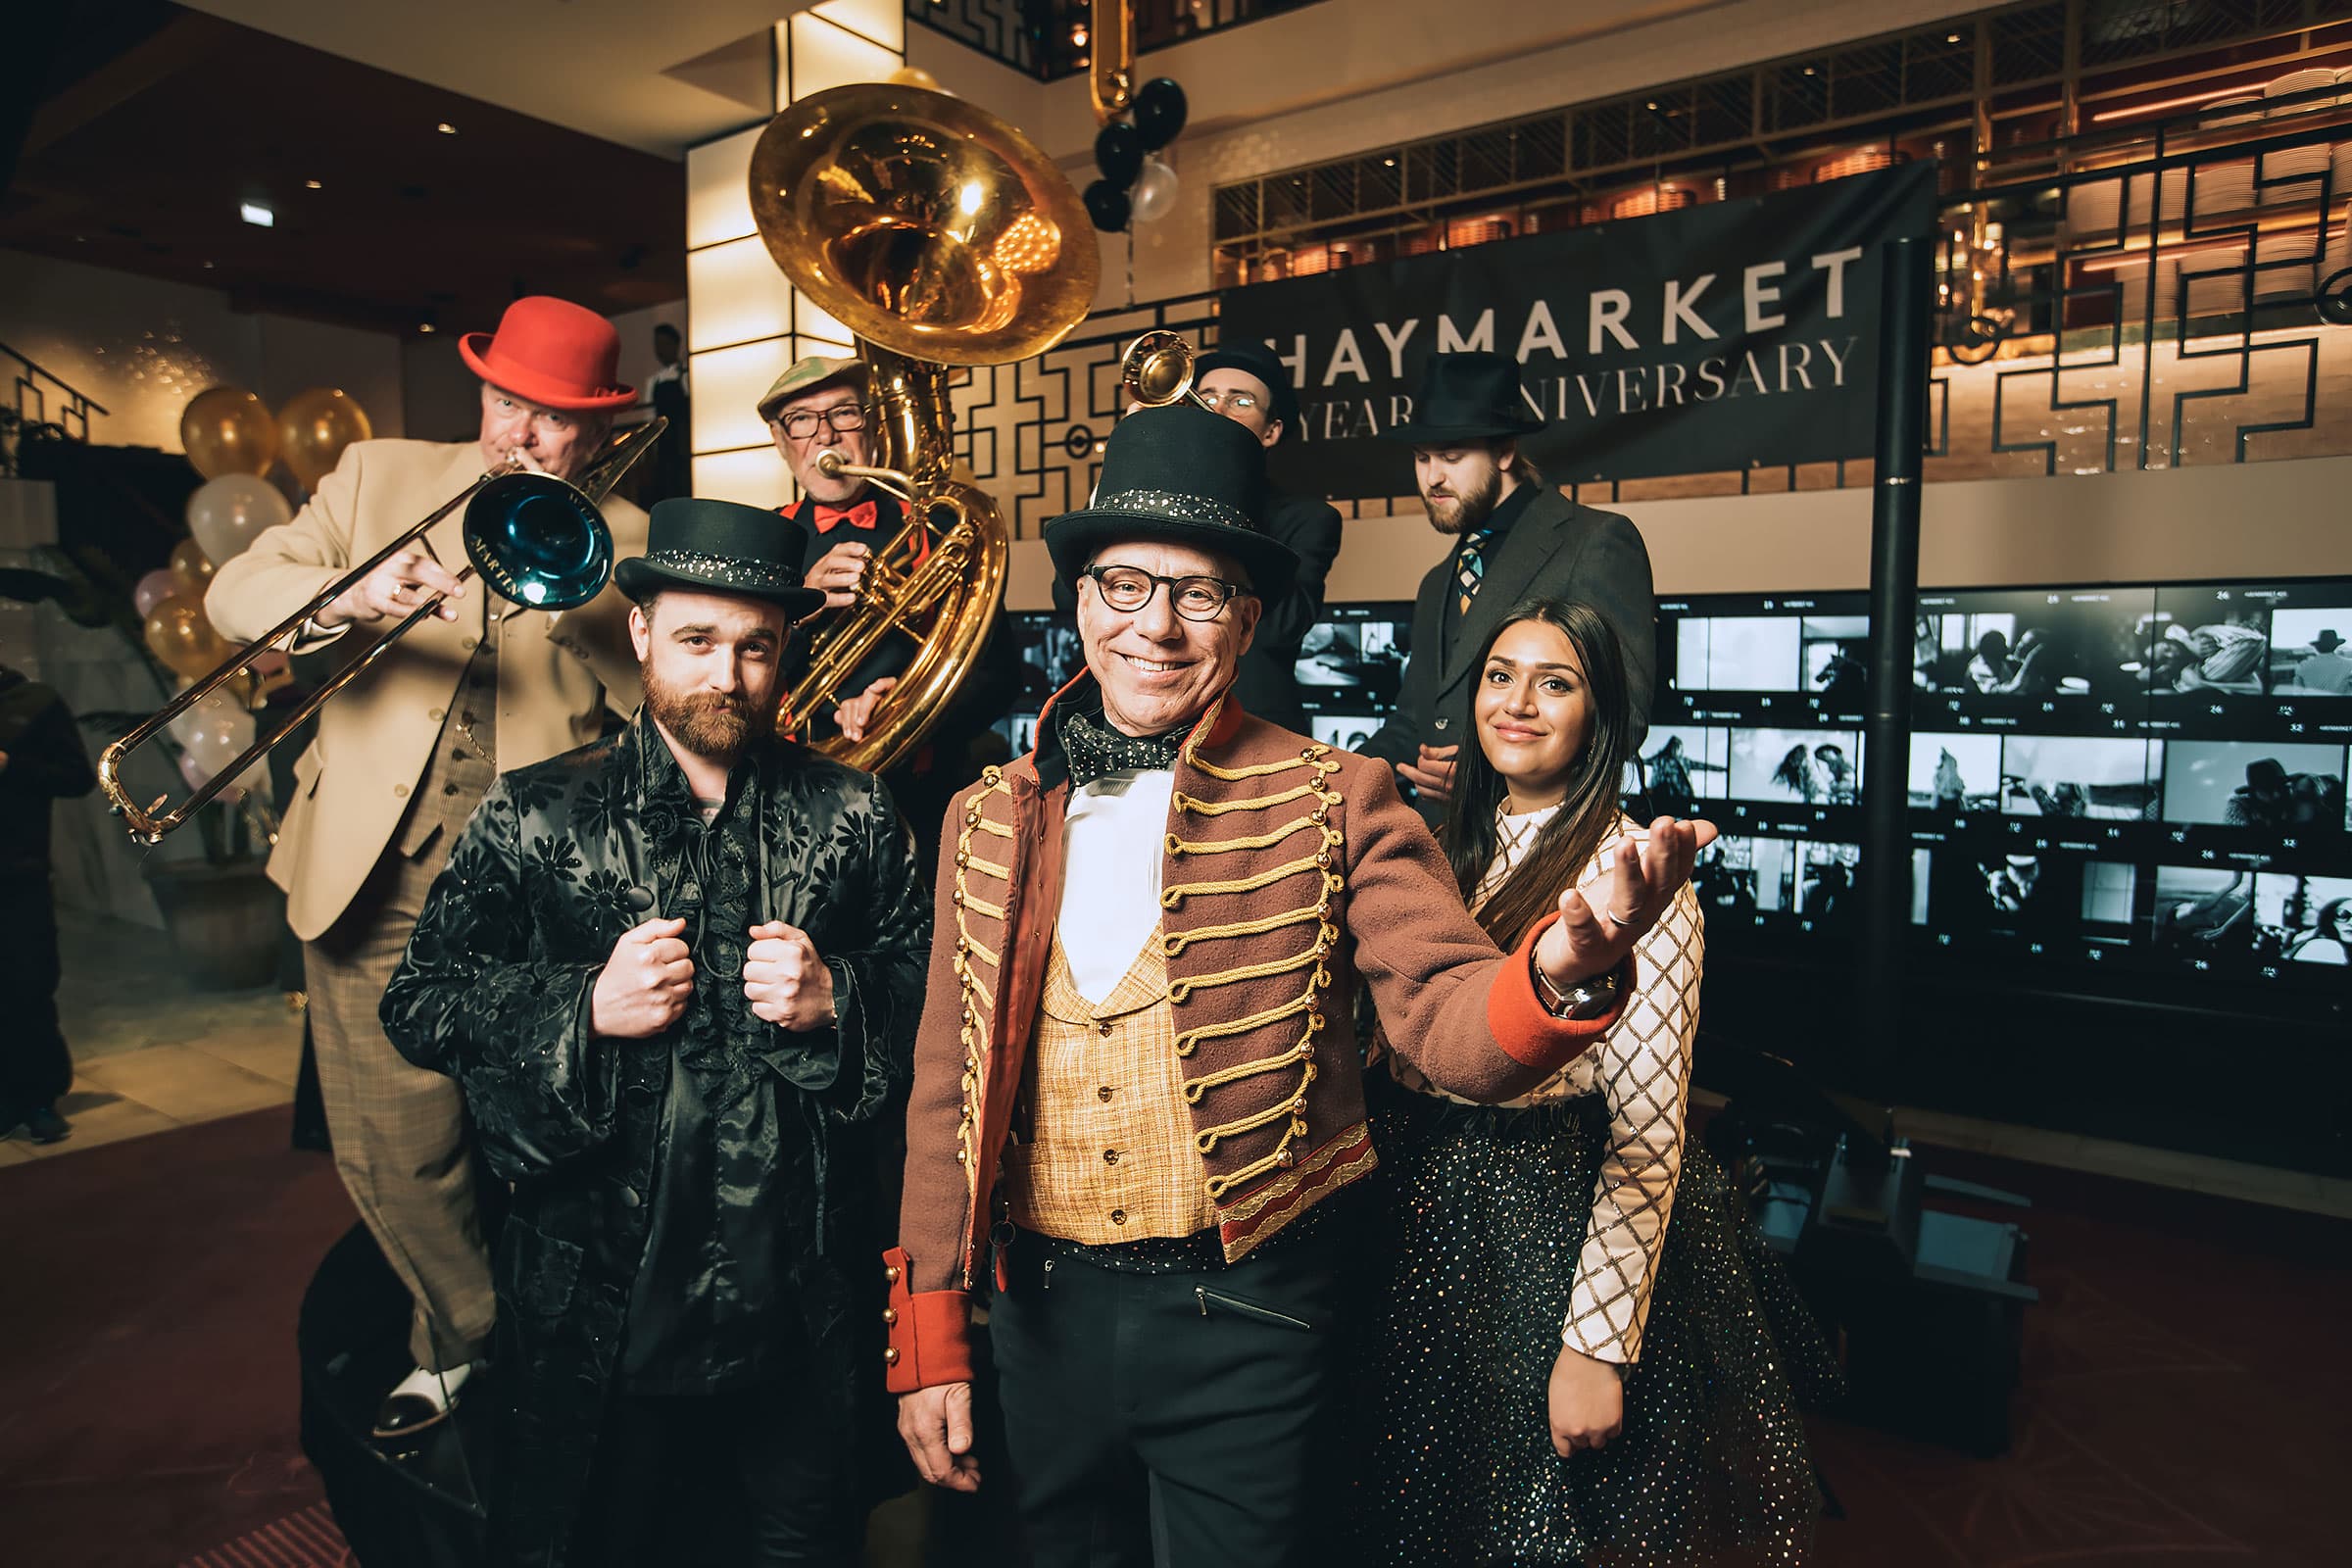 Livsstilshotellet Haymarket firar ett år - fortsätter att bjuda på nya upplevelser